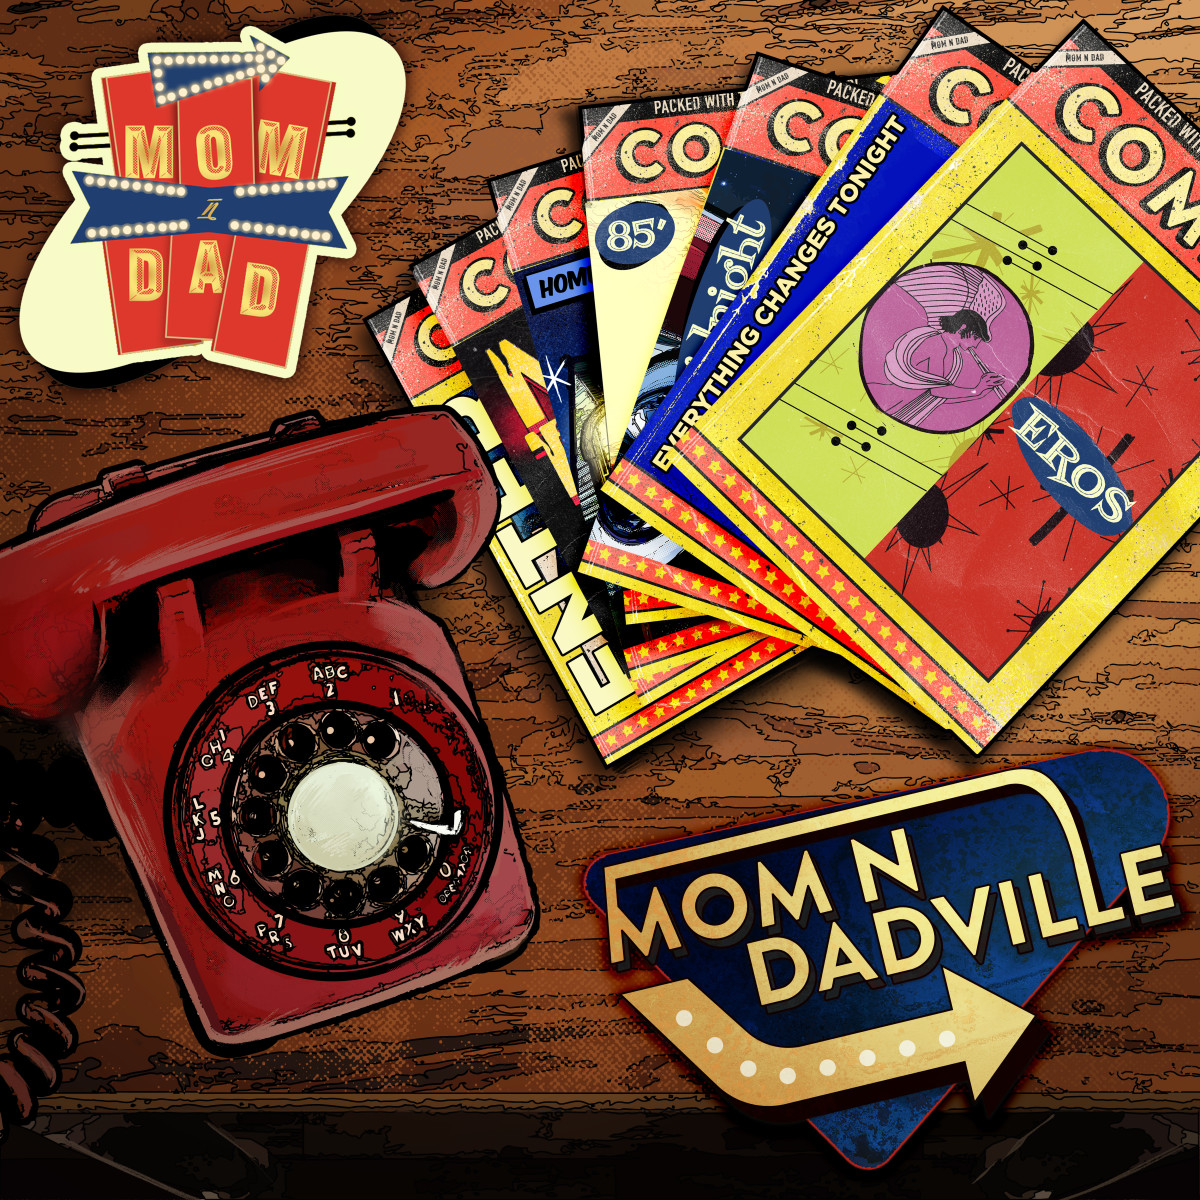 Mom N Dad's "Mom N Dadville EP" - Album Artwork